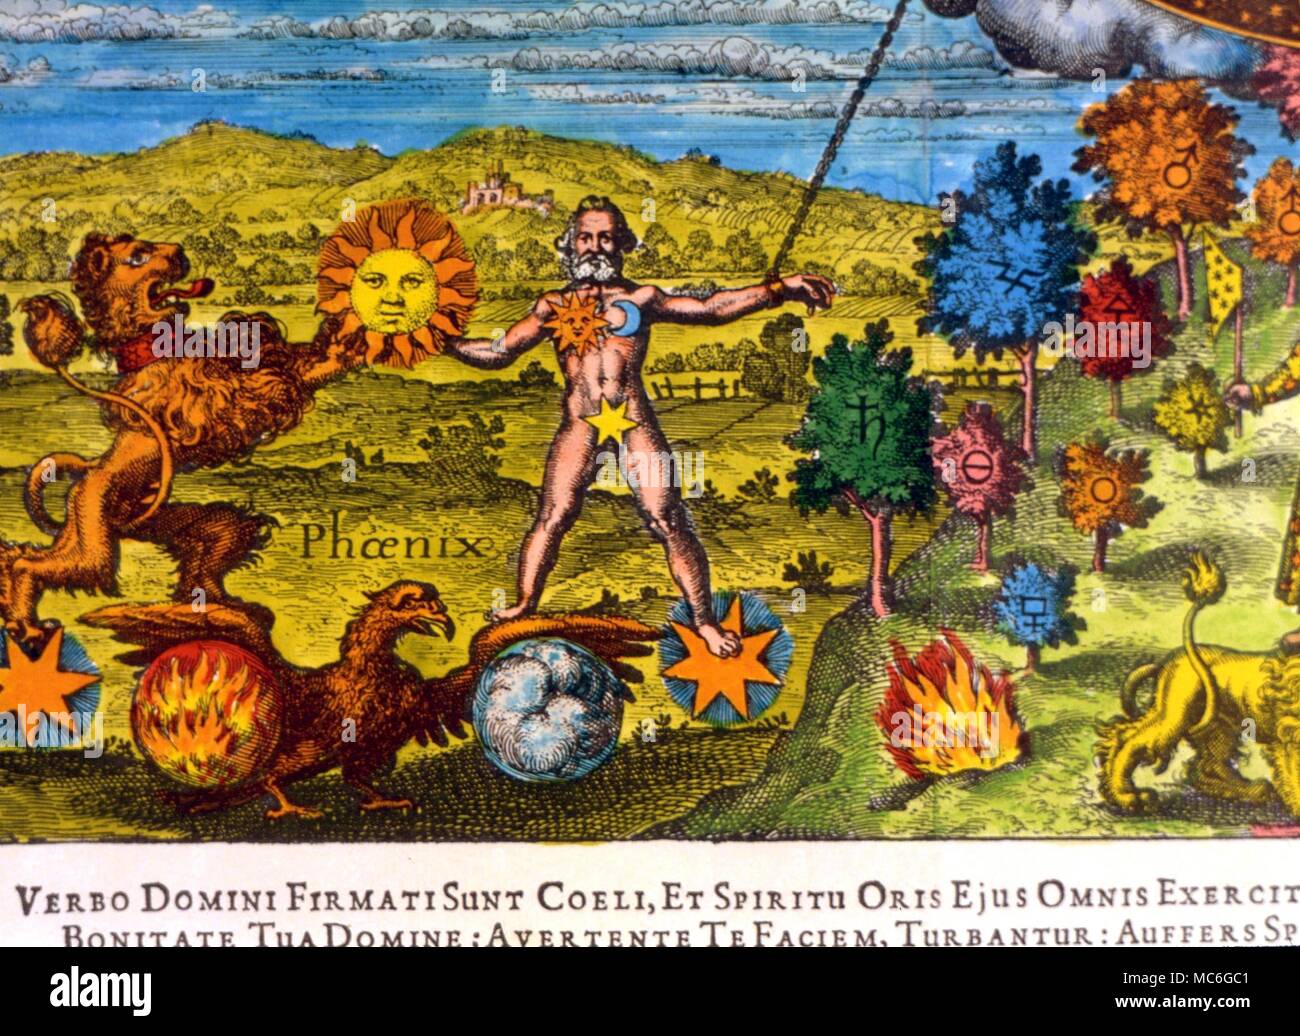 Immagine emblematica di Lion come dominatore del sole, con Phoenix, dominatore del fuoco e aria. Da Johann Daniel Mylius' Opus Medico-chymicum, 1618 Foto Stock